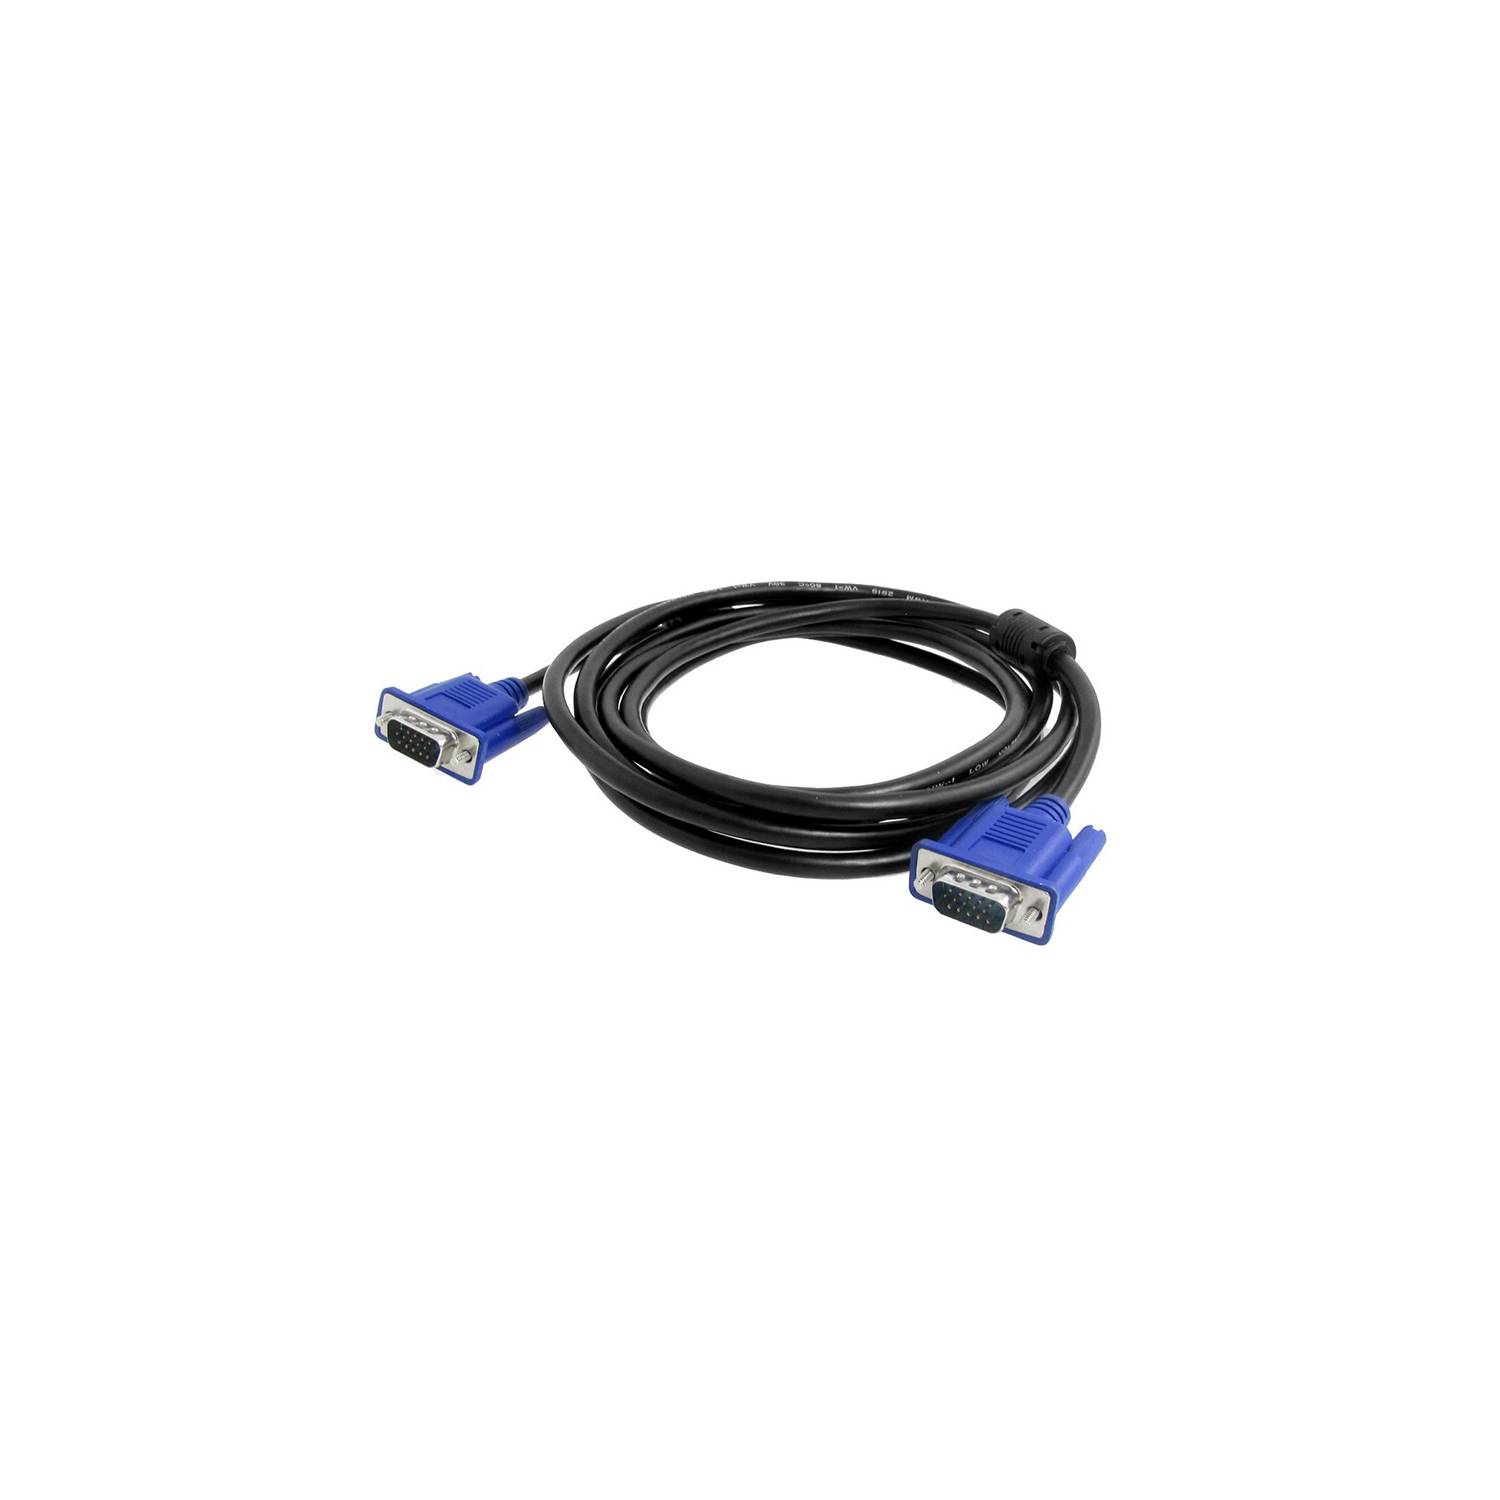 Cable VGA para Monitor/Proyector (20 metros)